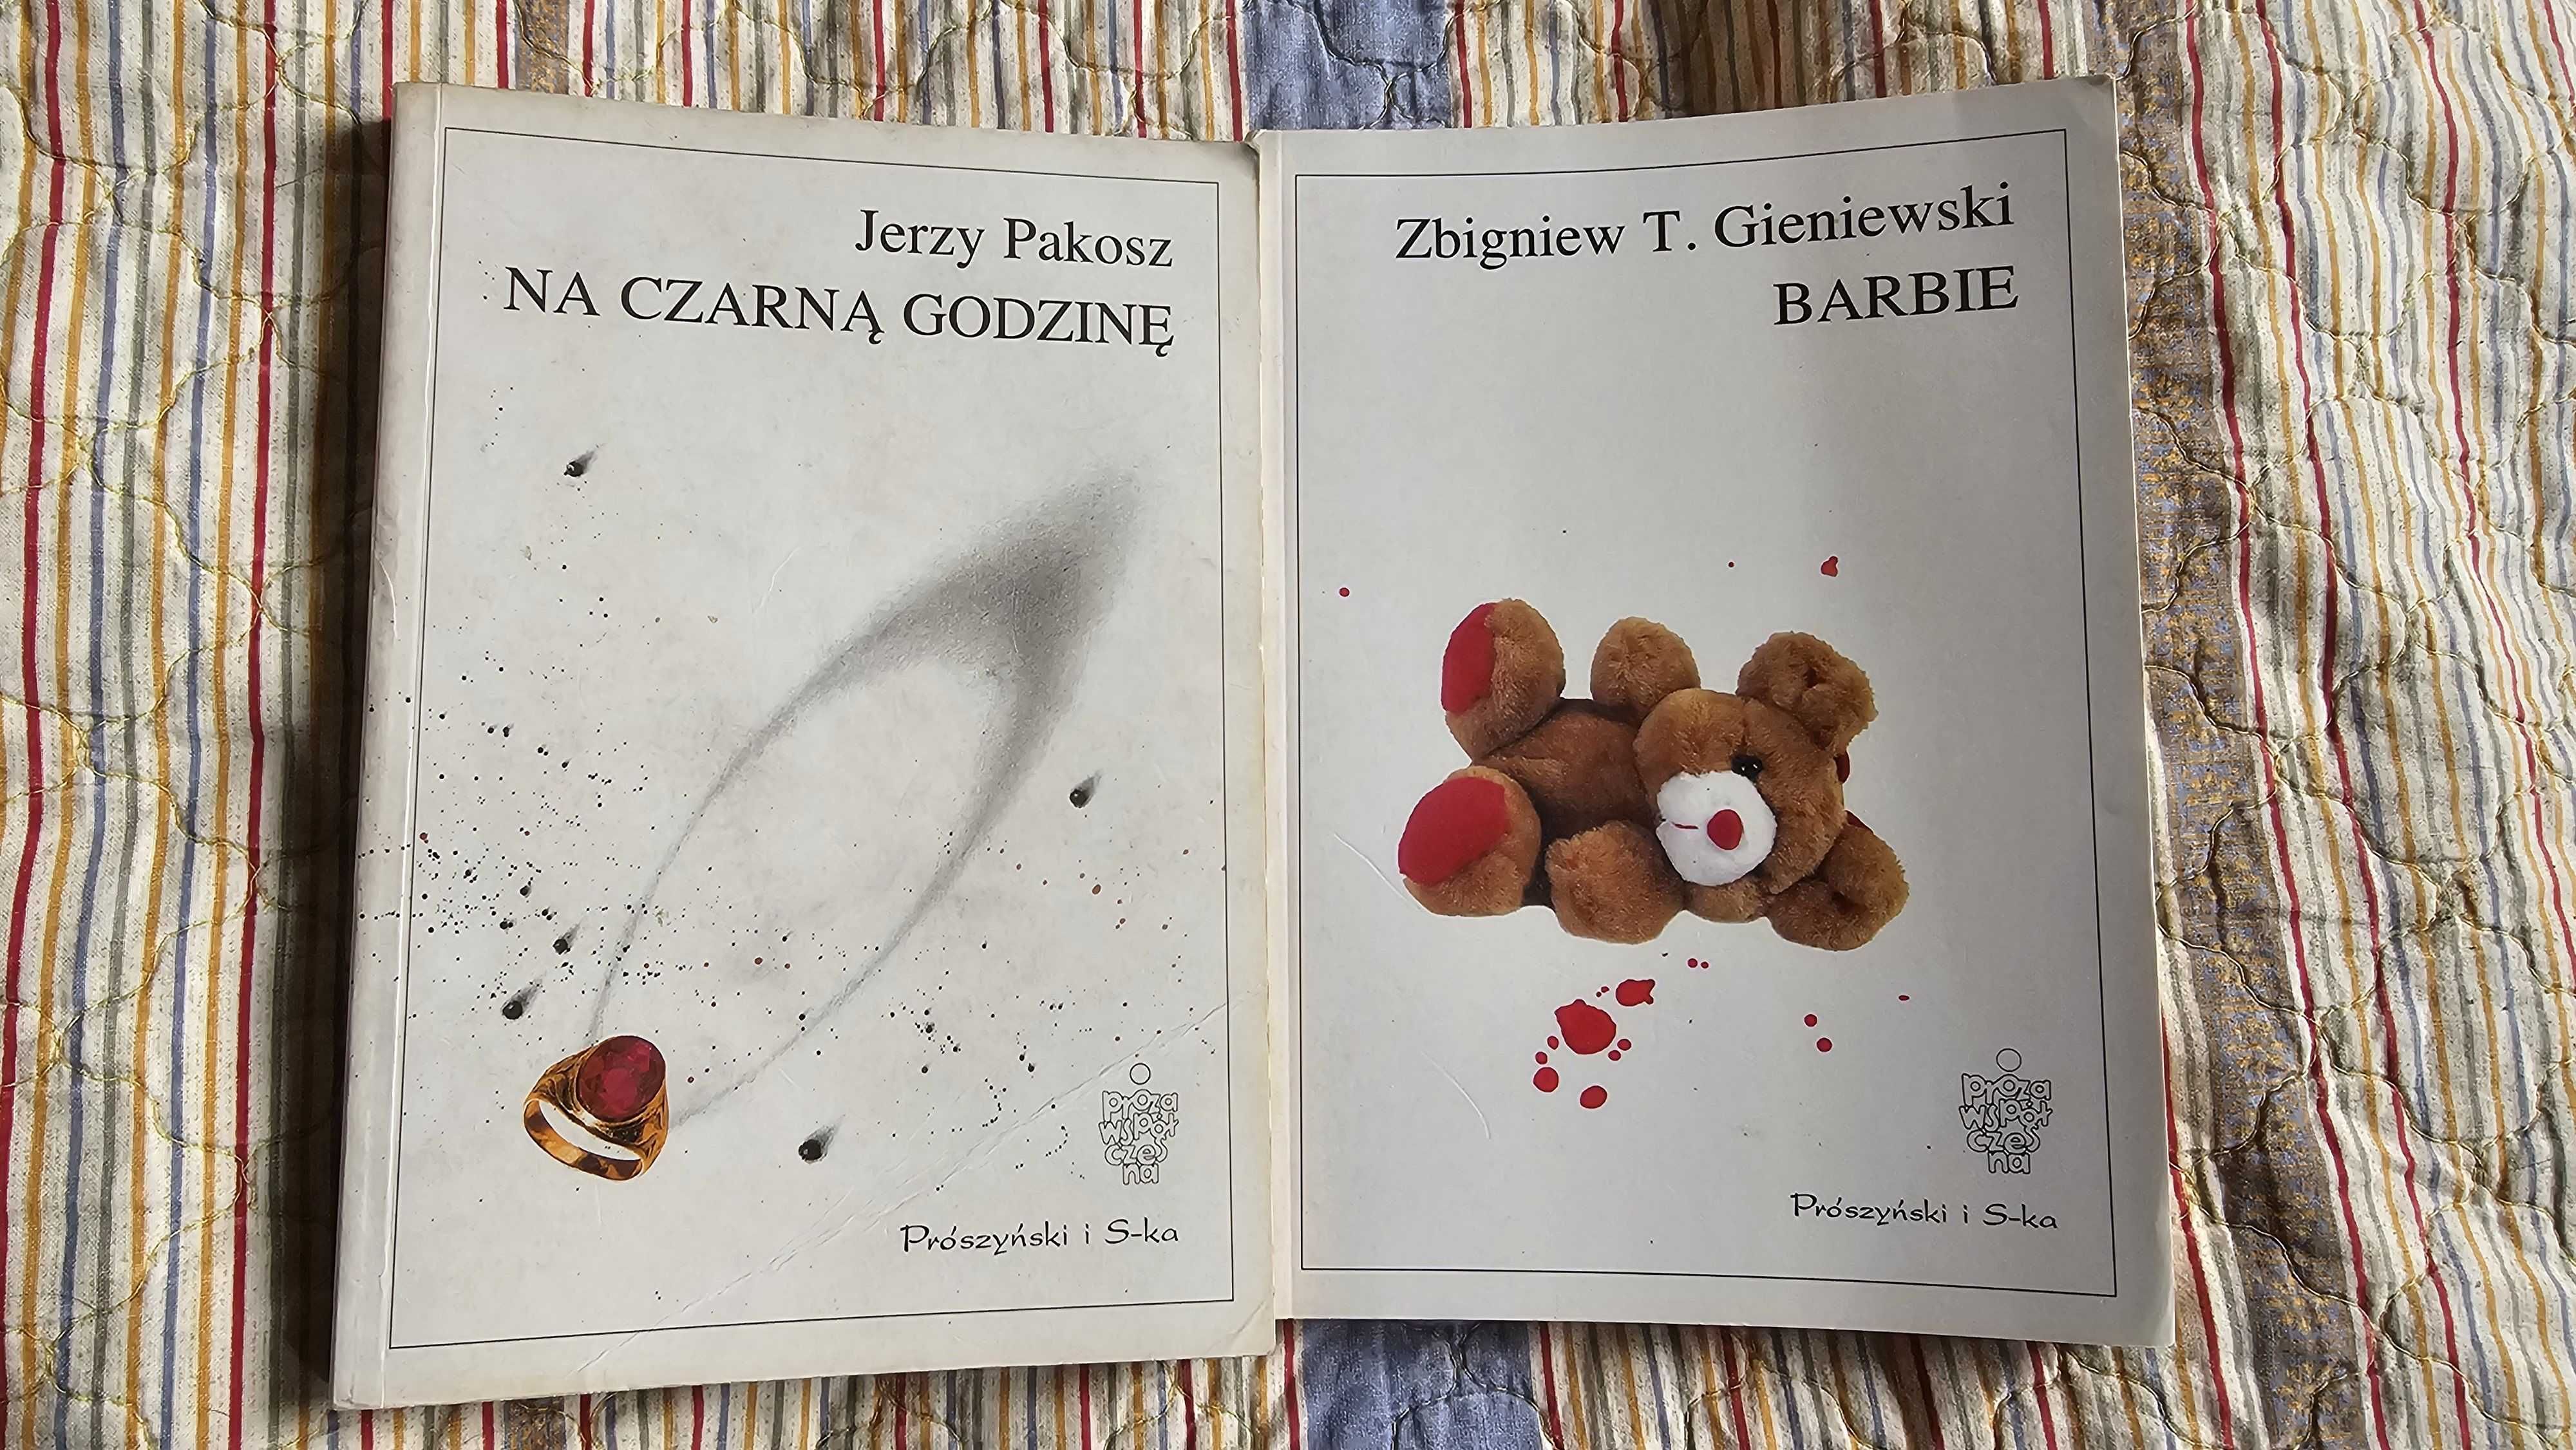 AW Zestaw 2 książek BARBIE Gieniewski - Na czarną godzinę Pakosz